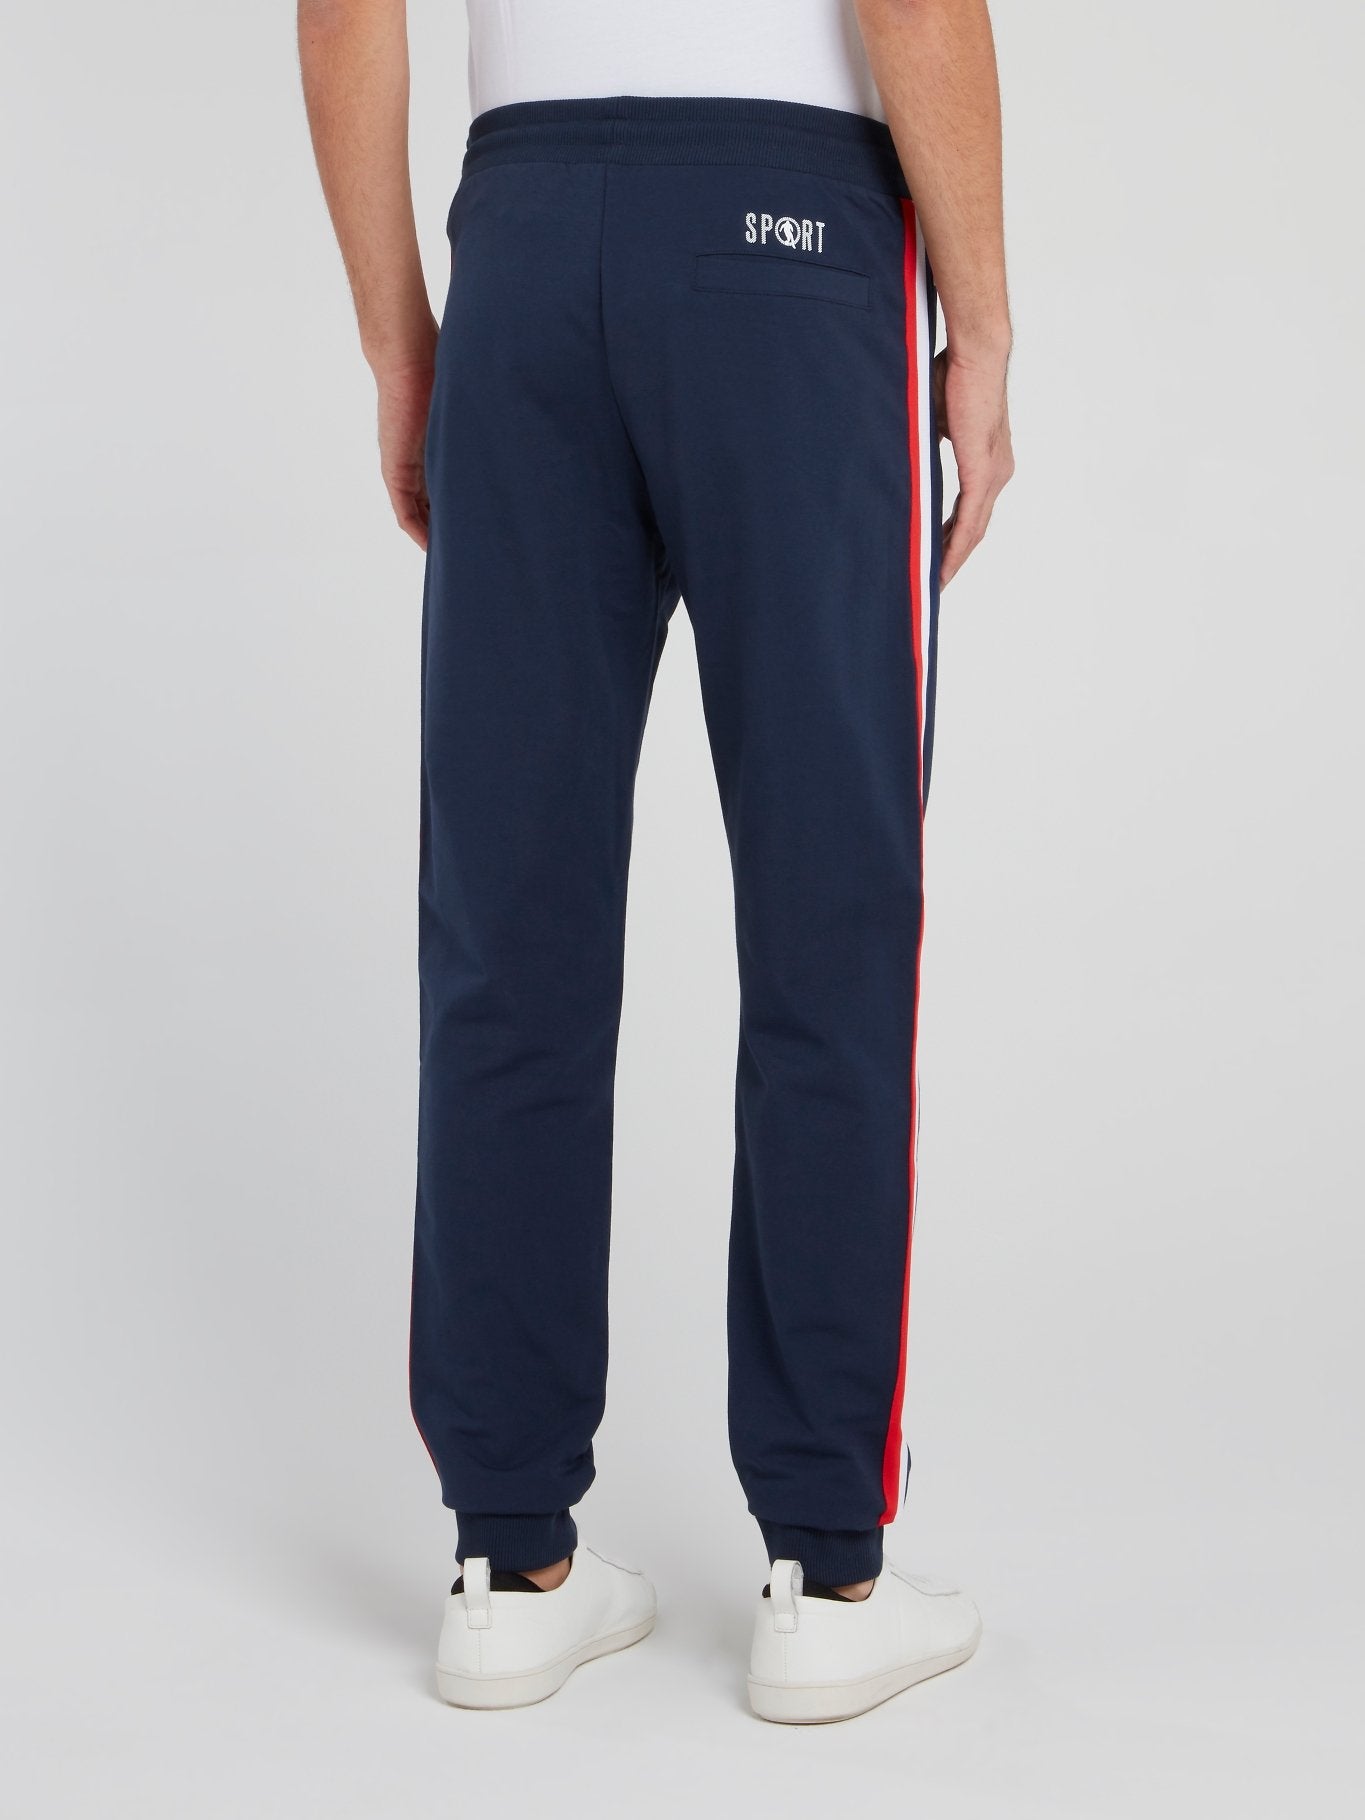 Navy Side Stripe Fleece Pants